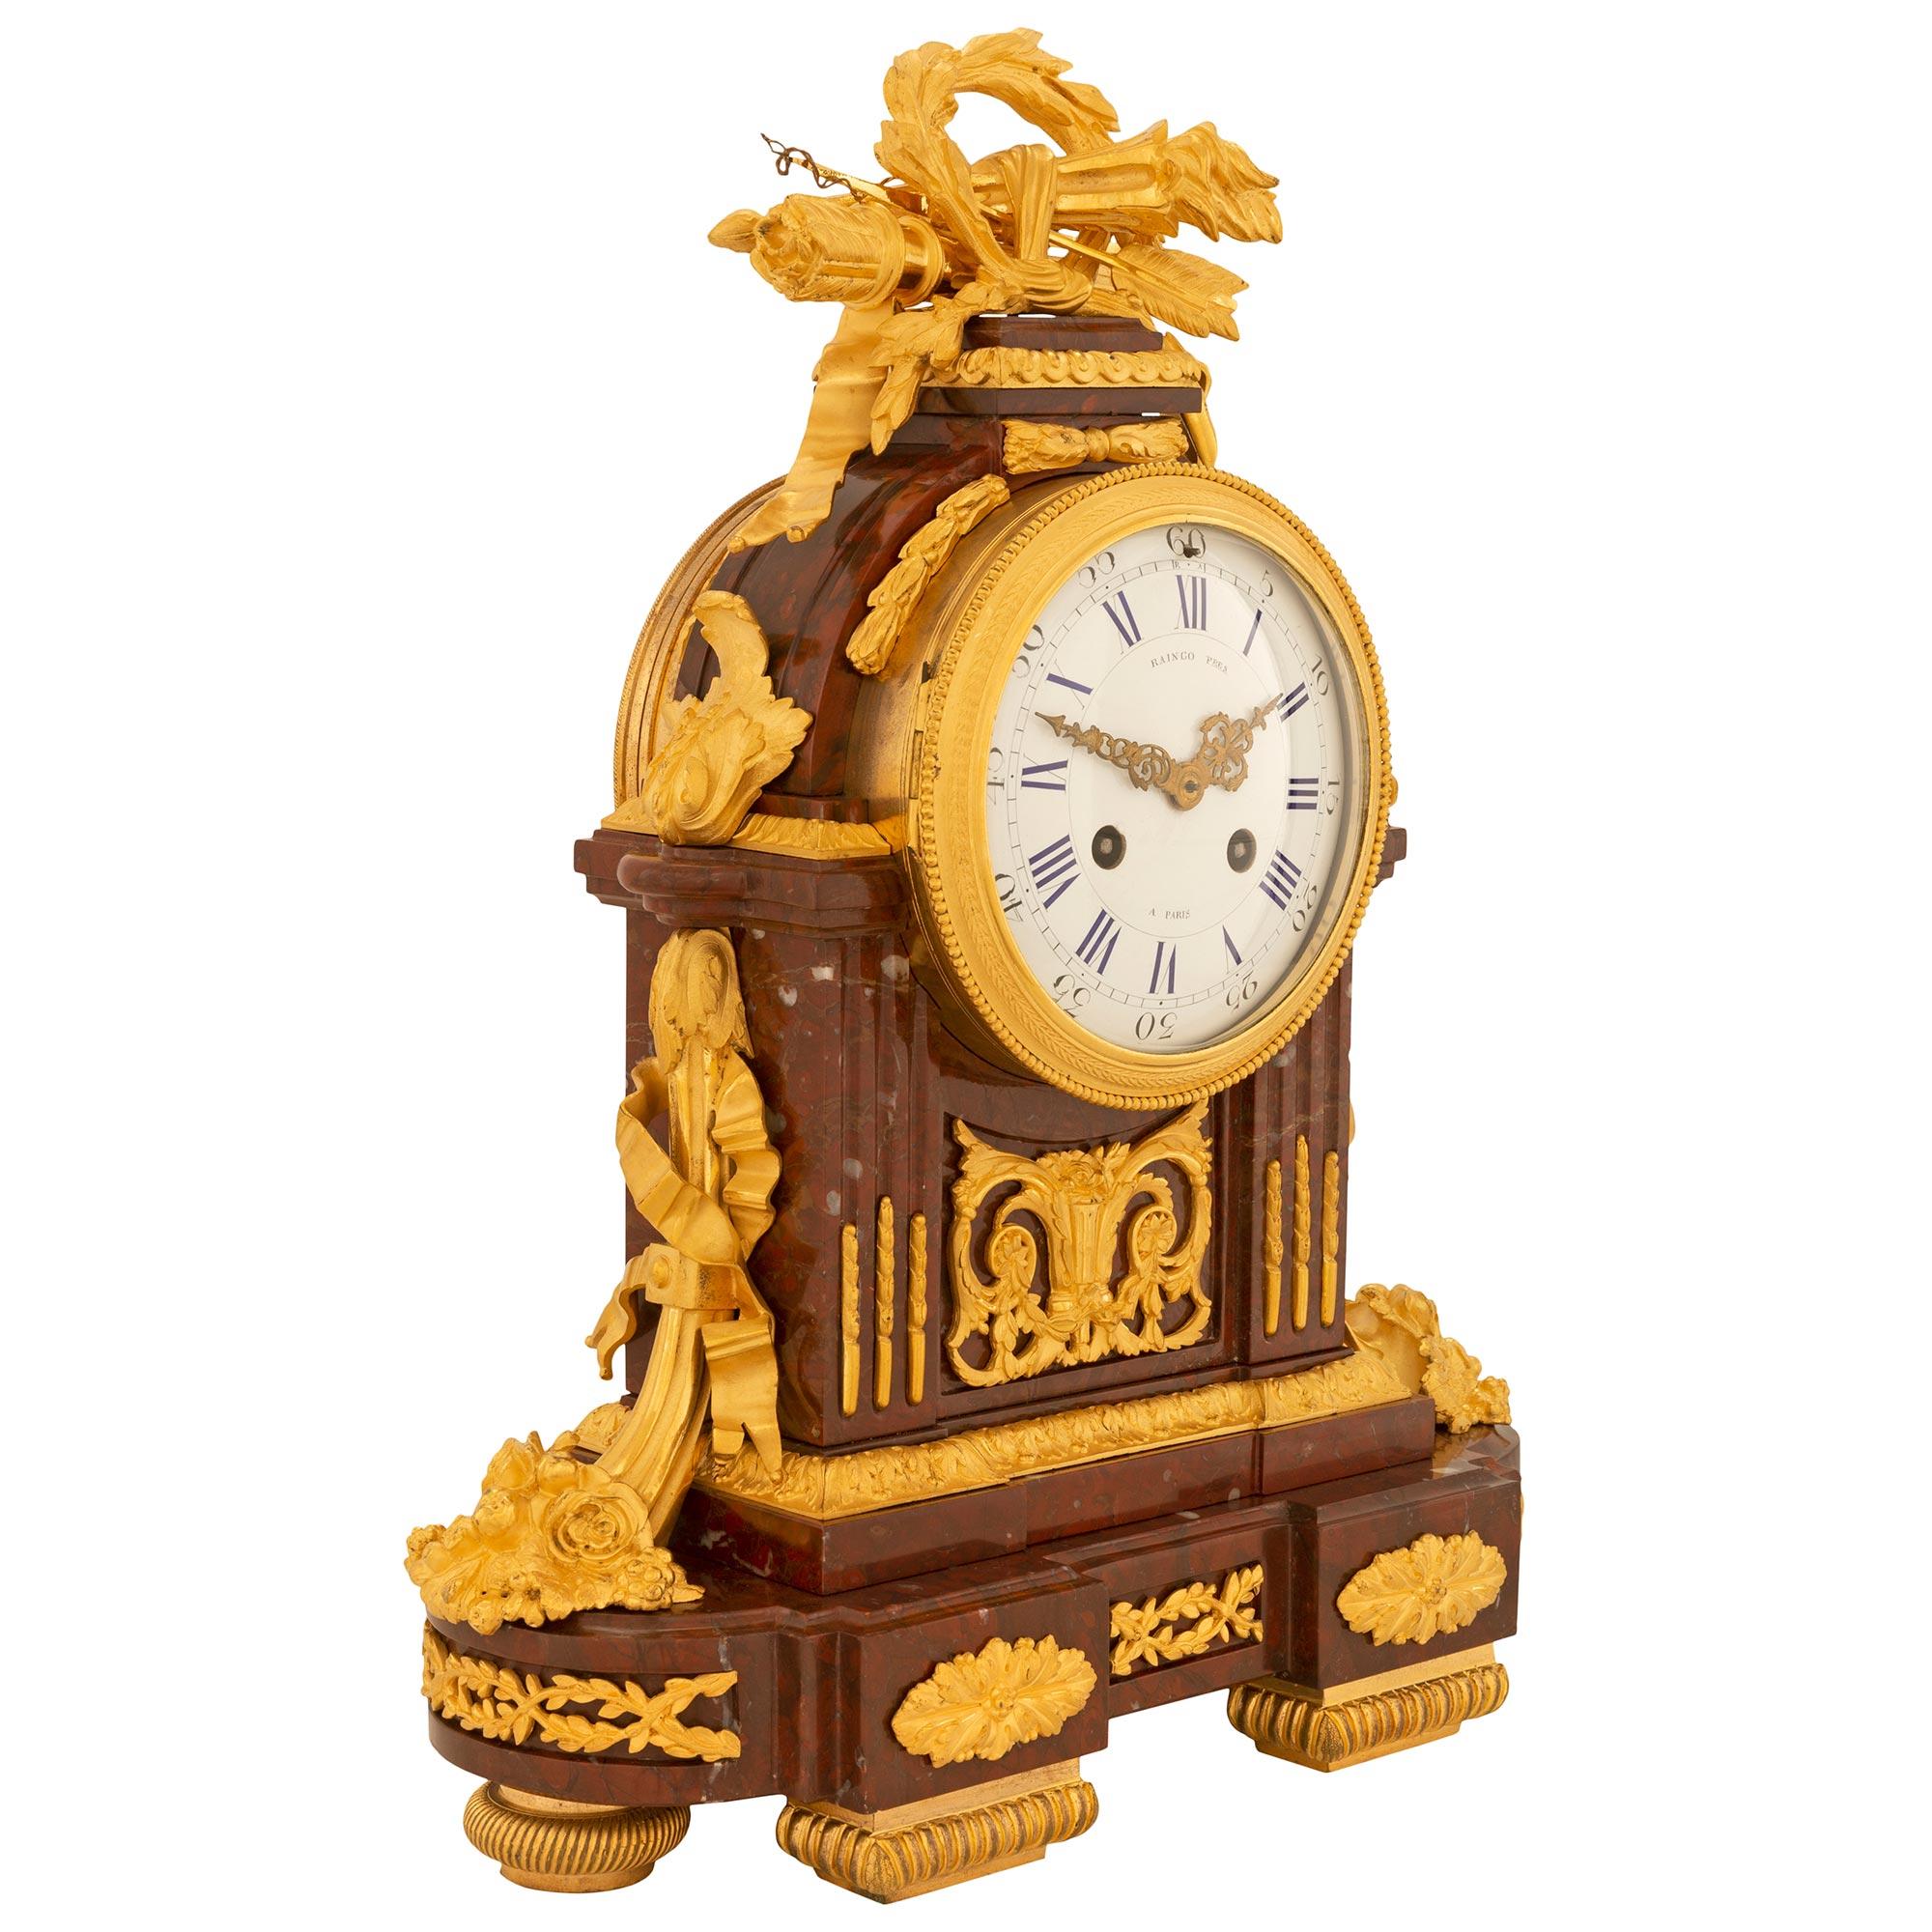 Une étonnante et très haute qualité de pendule en bronze doré et marbre Rouge Griotte de style Louis XVI du 19ème siècle, signée Raingo Frères. L'horloge est soutenue par deux élégants supports rectangulaires à cannelures à l'avant et par des pieds